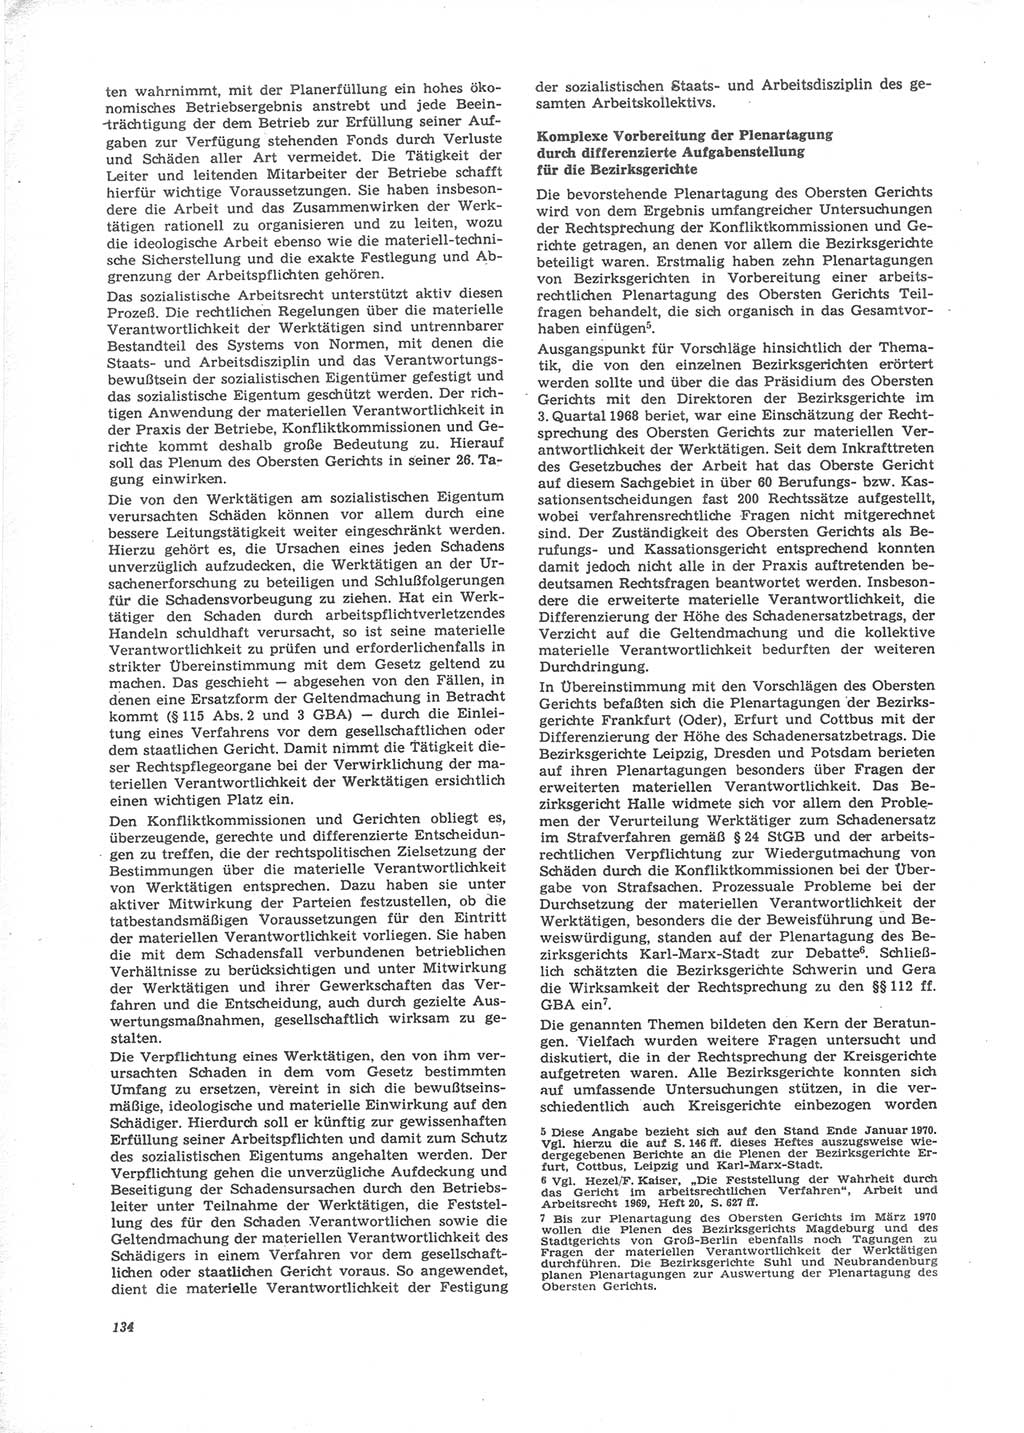 Neue Justiz (NJ), Zeitschrift für Recht und Rechtswissenschaft [Deutsche Demokratische Republik (DDR)], 24. Jahrgang 1970, Seite 134 (NJ DDR 1970, S. 134)